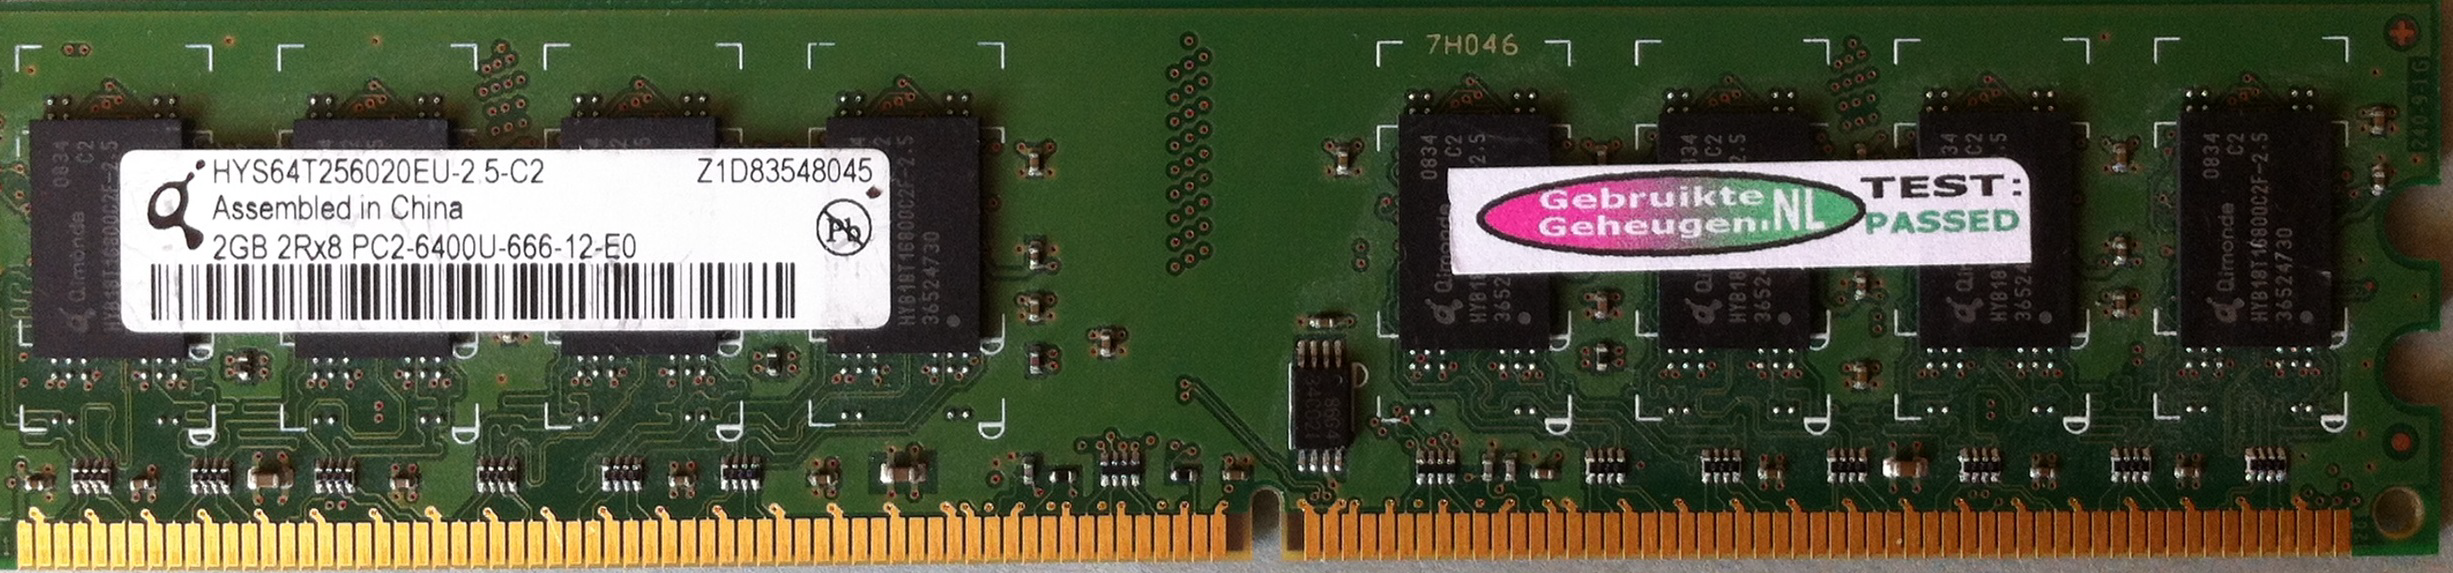 Qimonda 2GB DDR2 PC2-6400U 800MHz